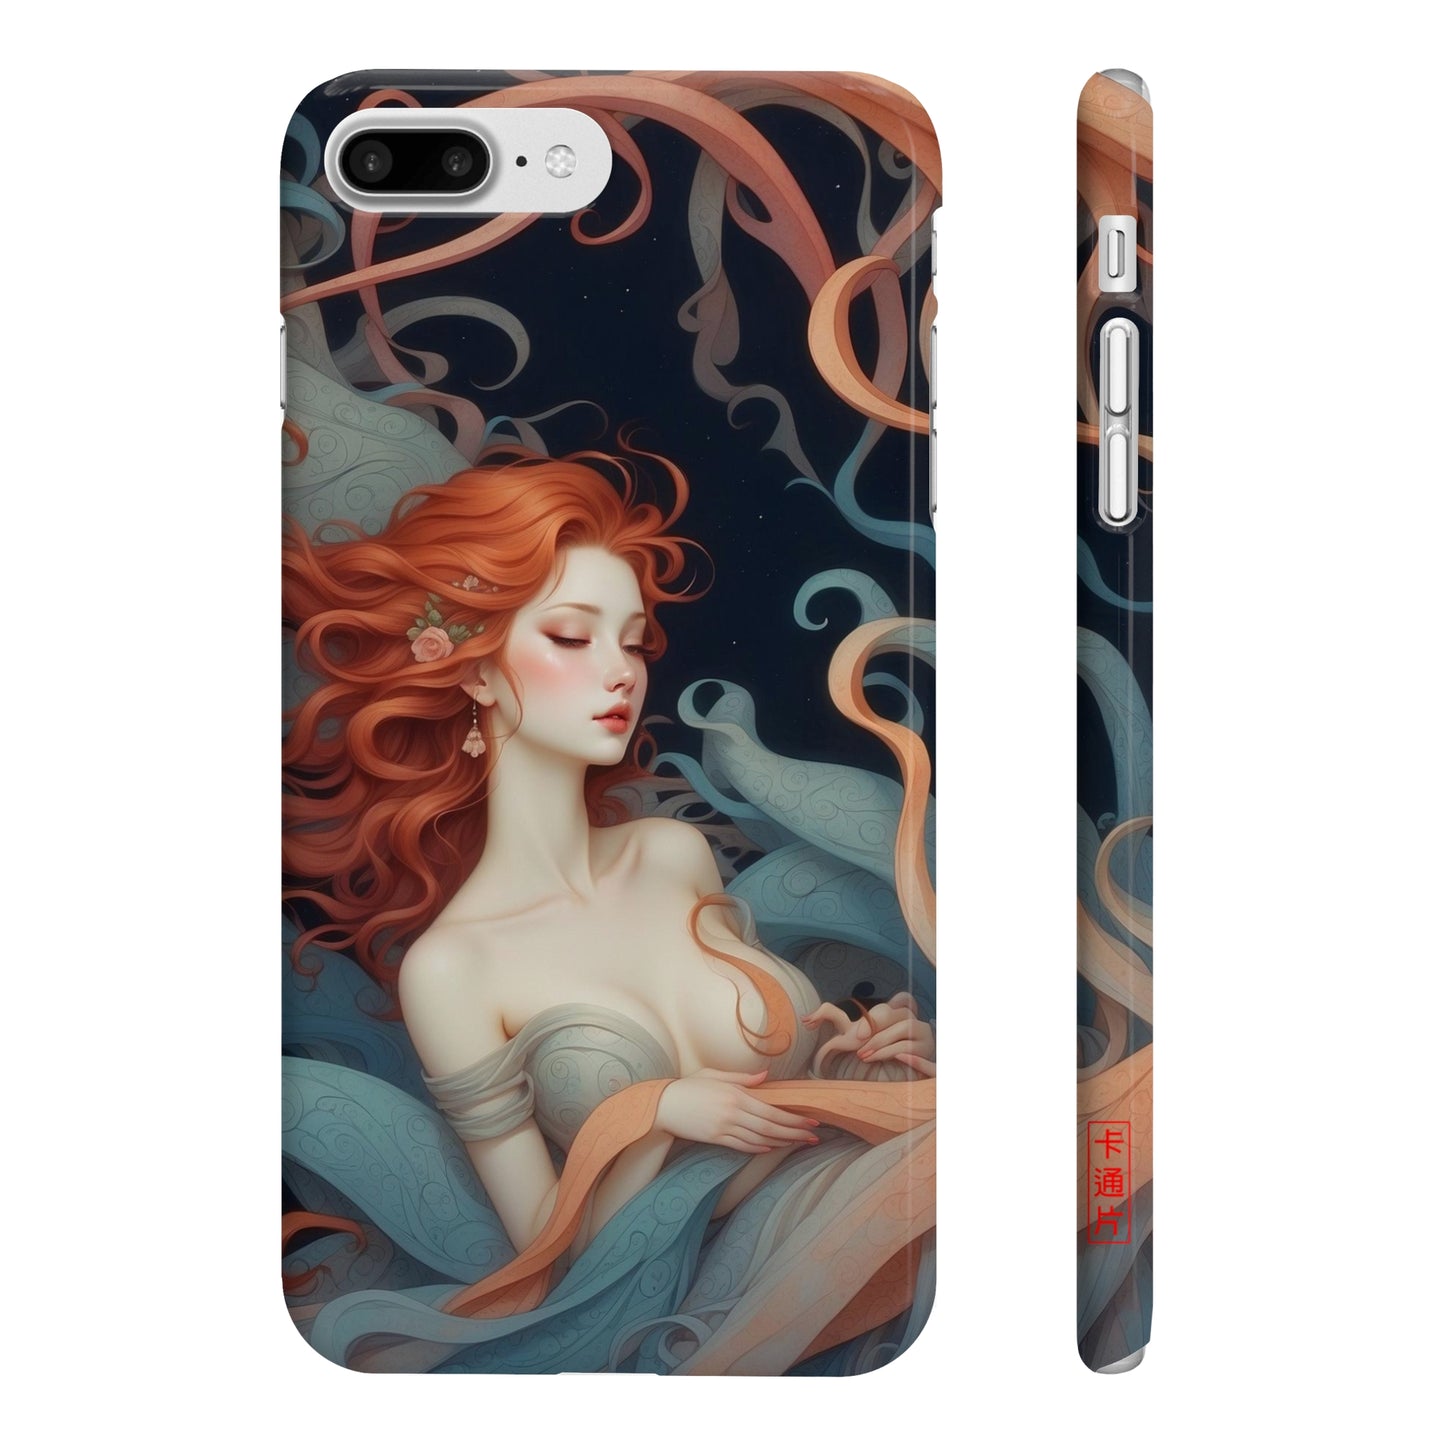 Kǎtōng Piàn - Mermaid Collection - 029 - Slim Phone Cases Printify